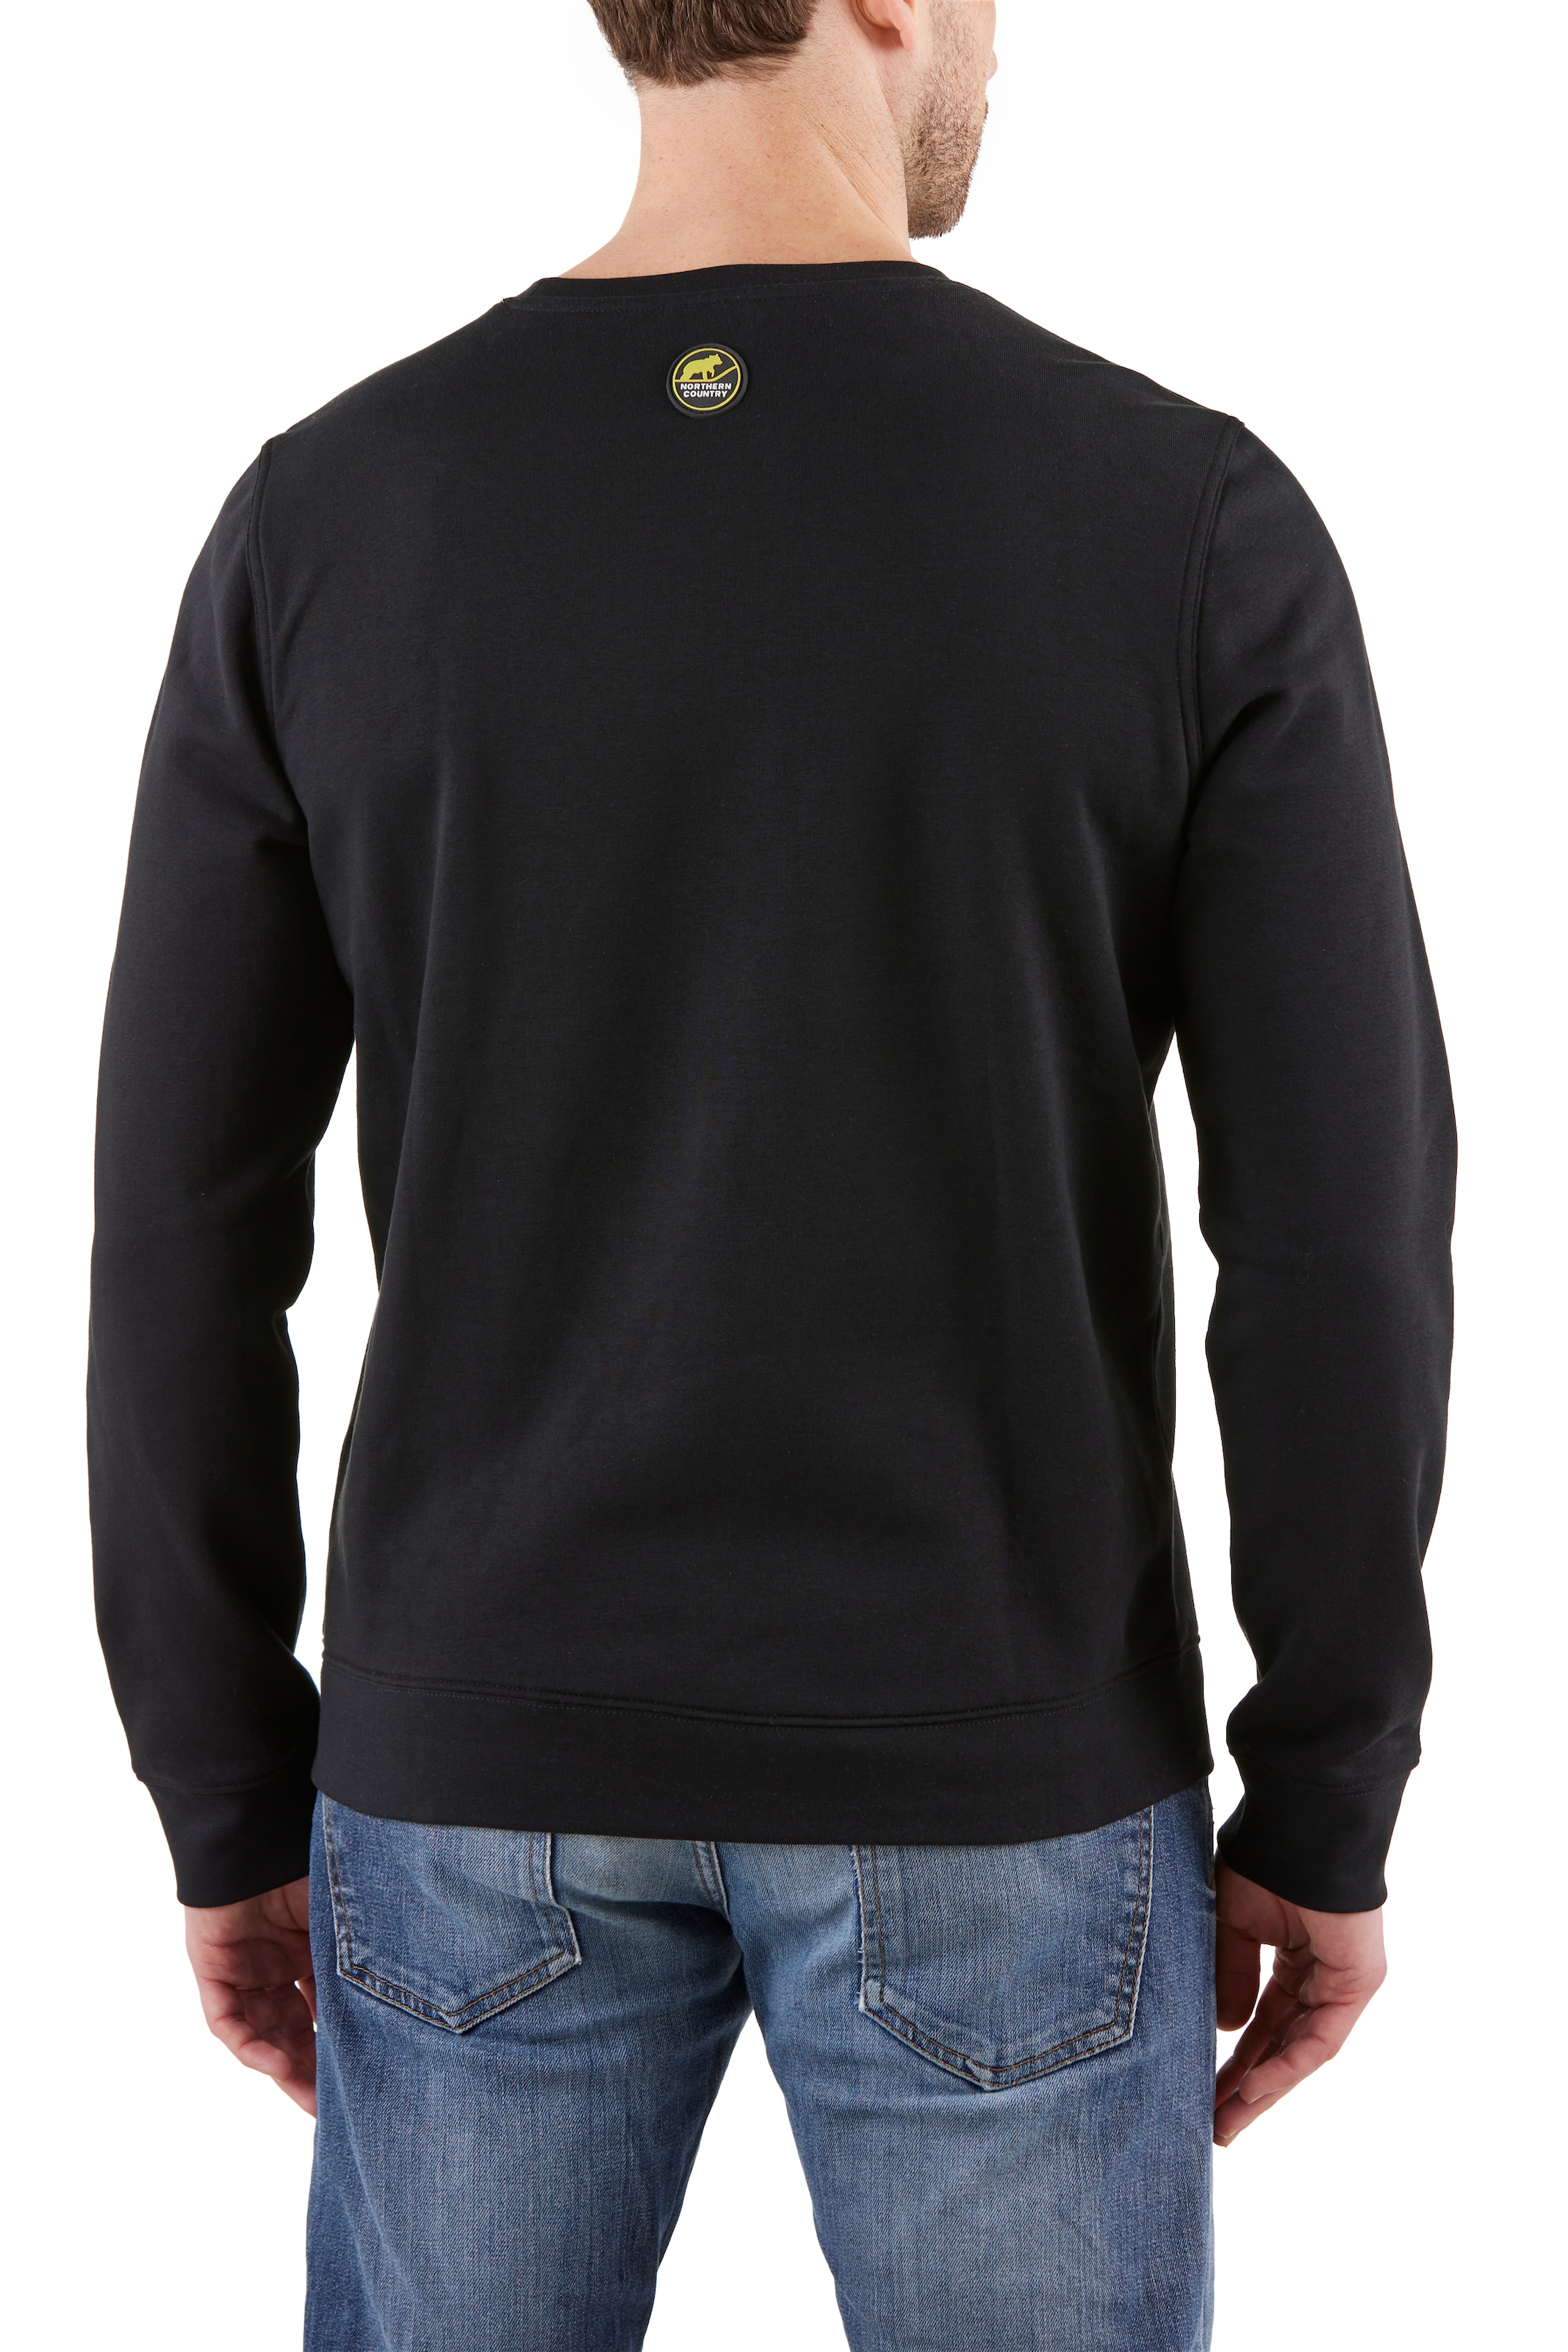 Sweatware Northern leichte Sweatshirt, online OTTO Arbeiten, klassische Country shoppen Passform, bei zum